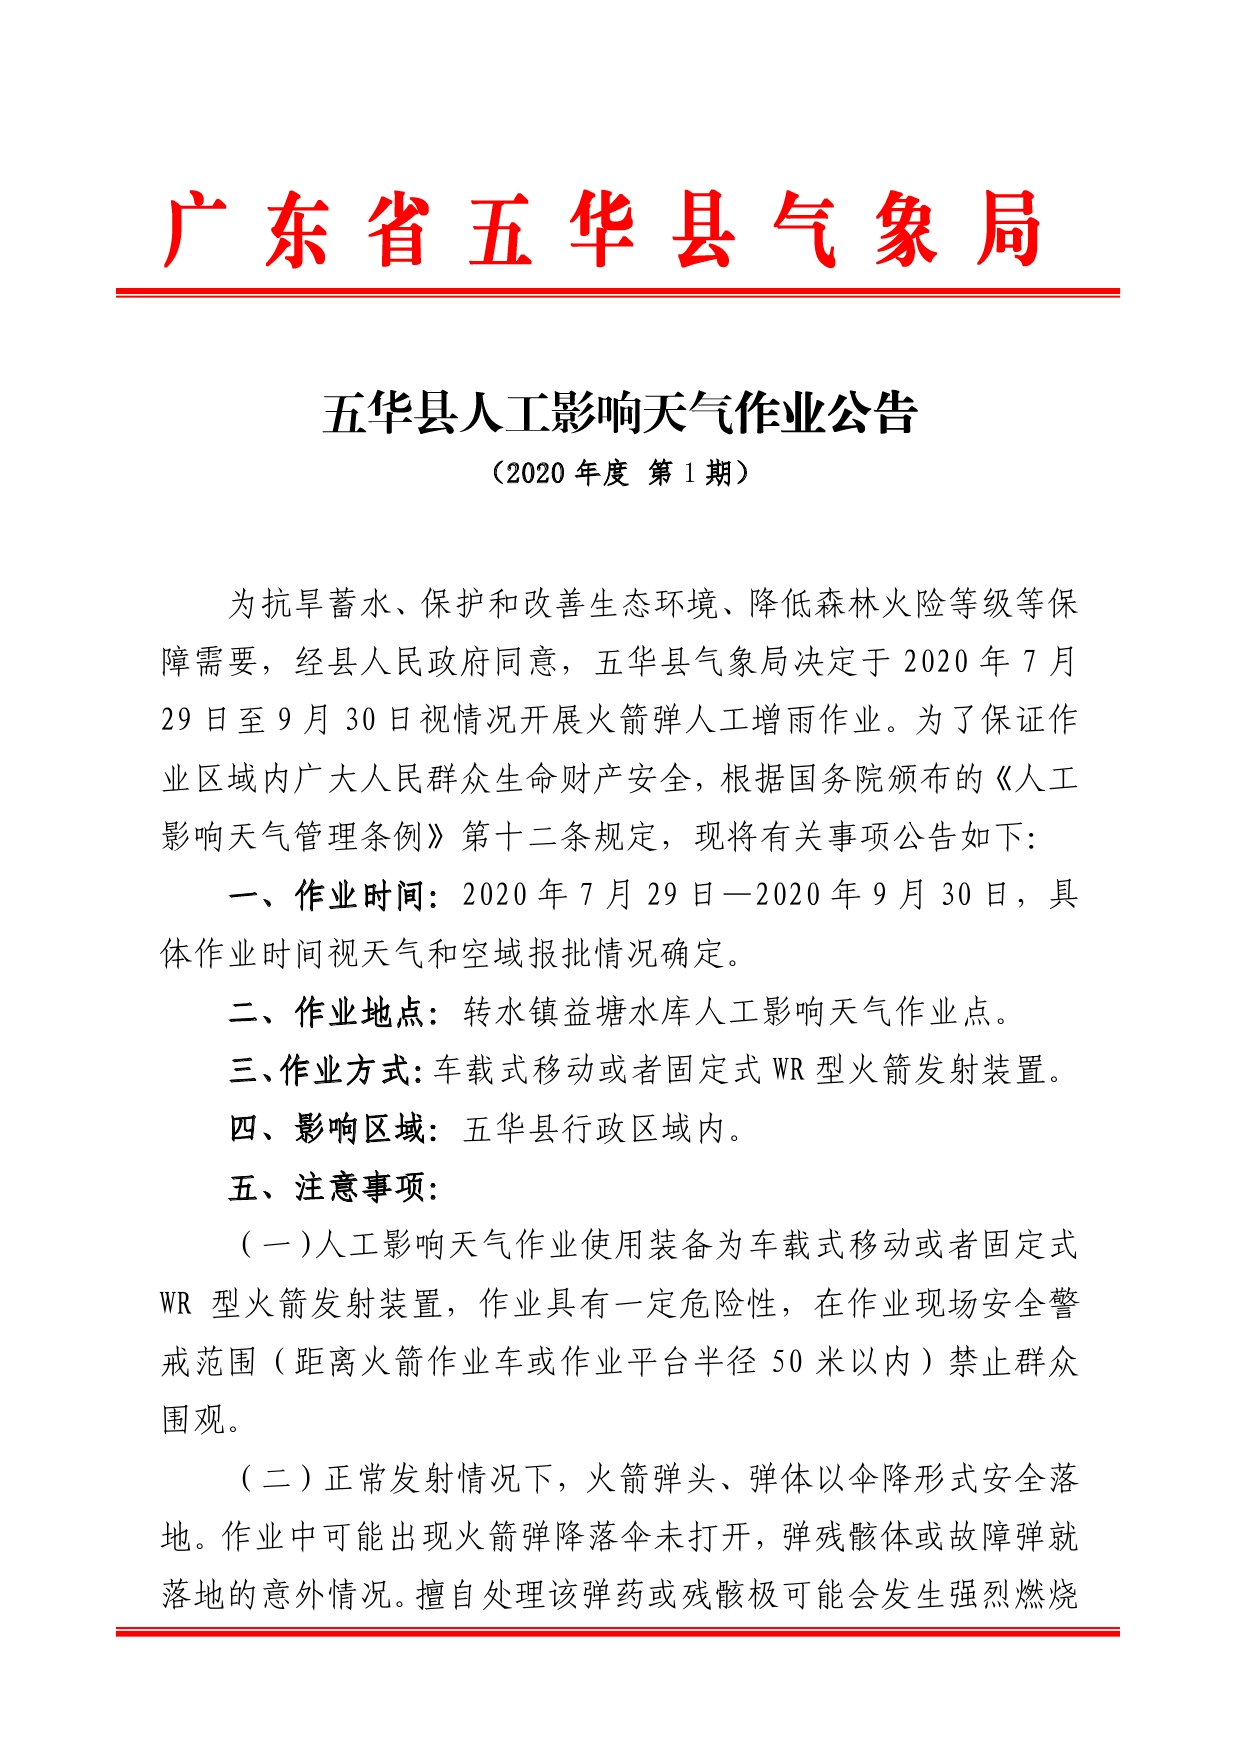 五华县人工影响天气作业公告20200000.jpg